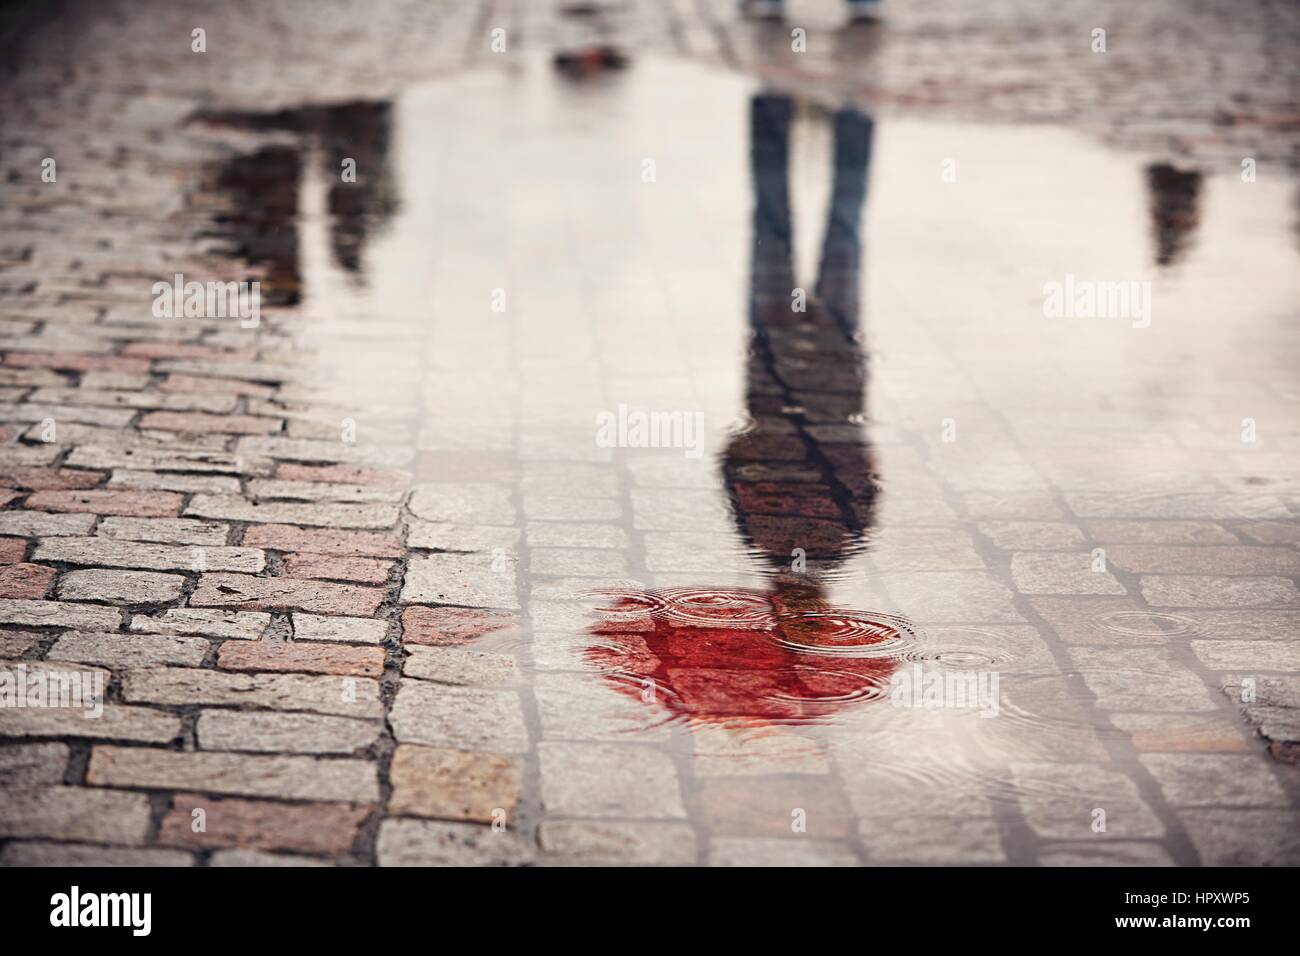 Jour de pluie. Reflet de jeune homme au parapluie rouge dans la flaque d'eau sur la rue de la ville au cours de la pluie. Banque D'Images